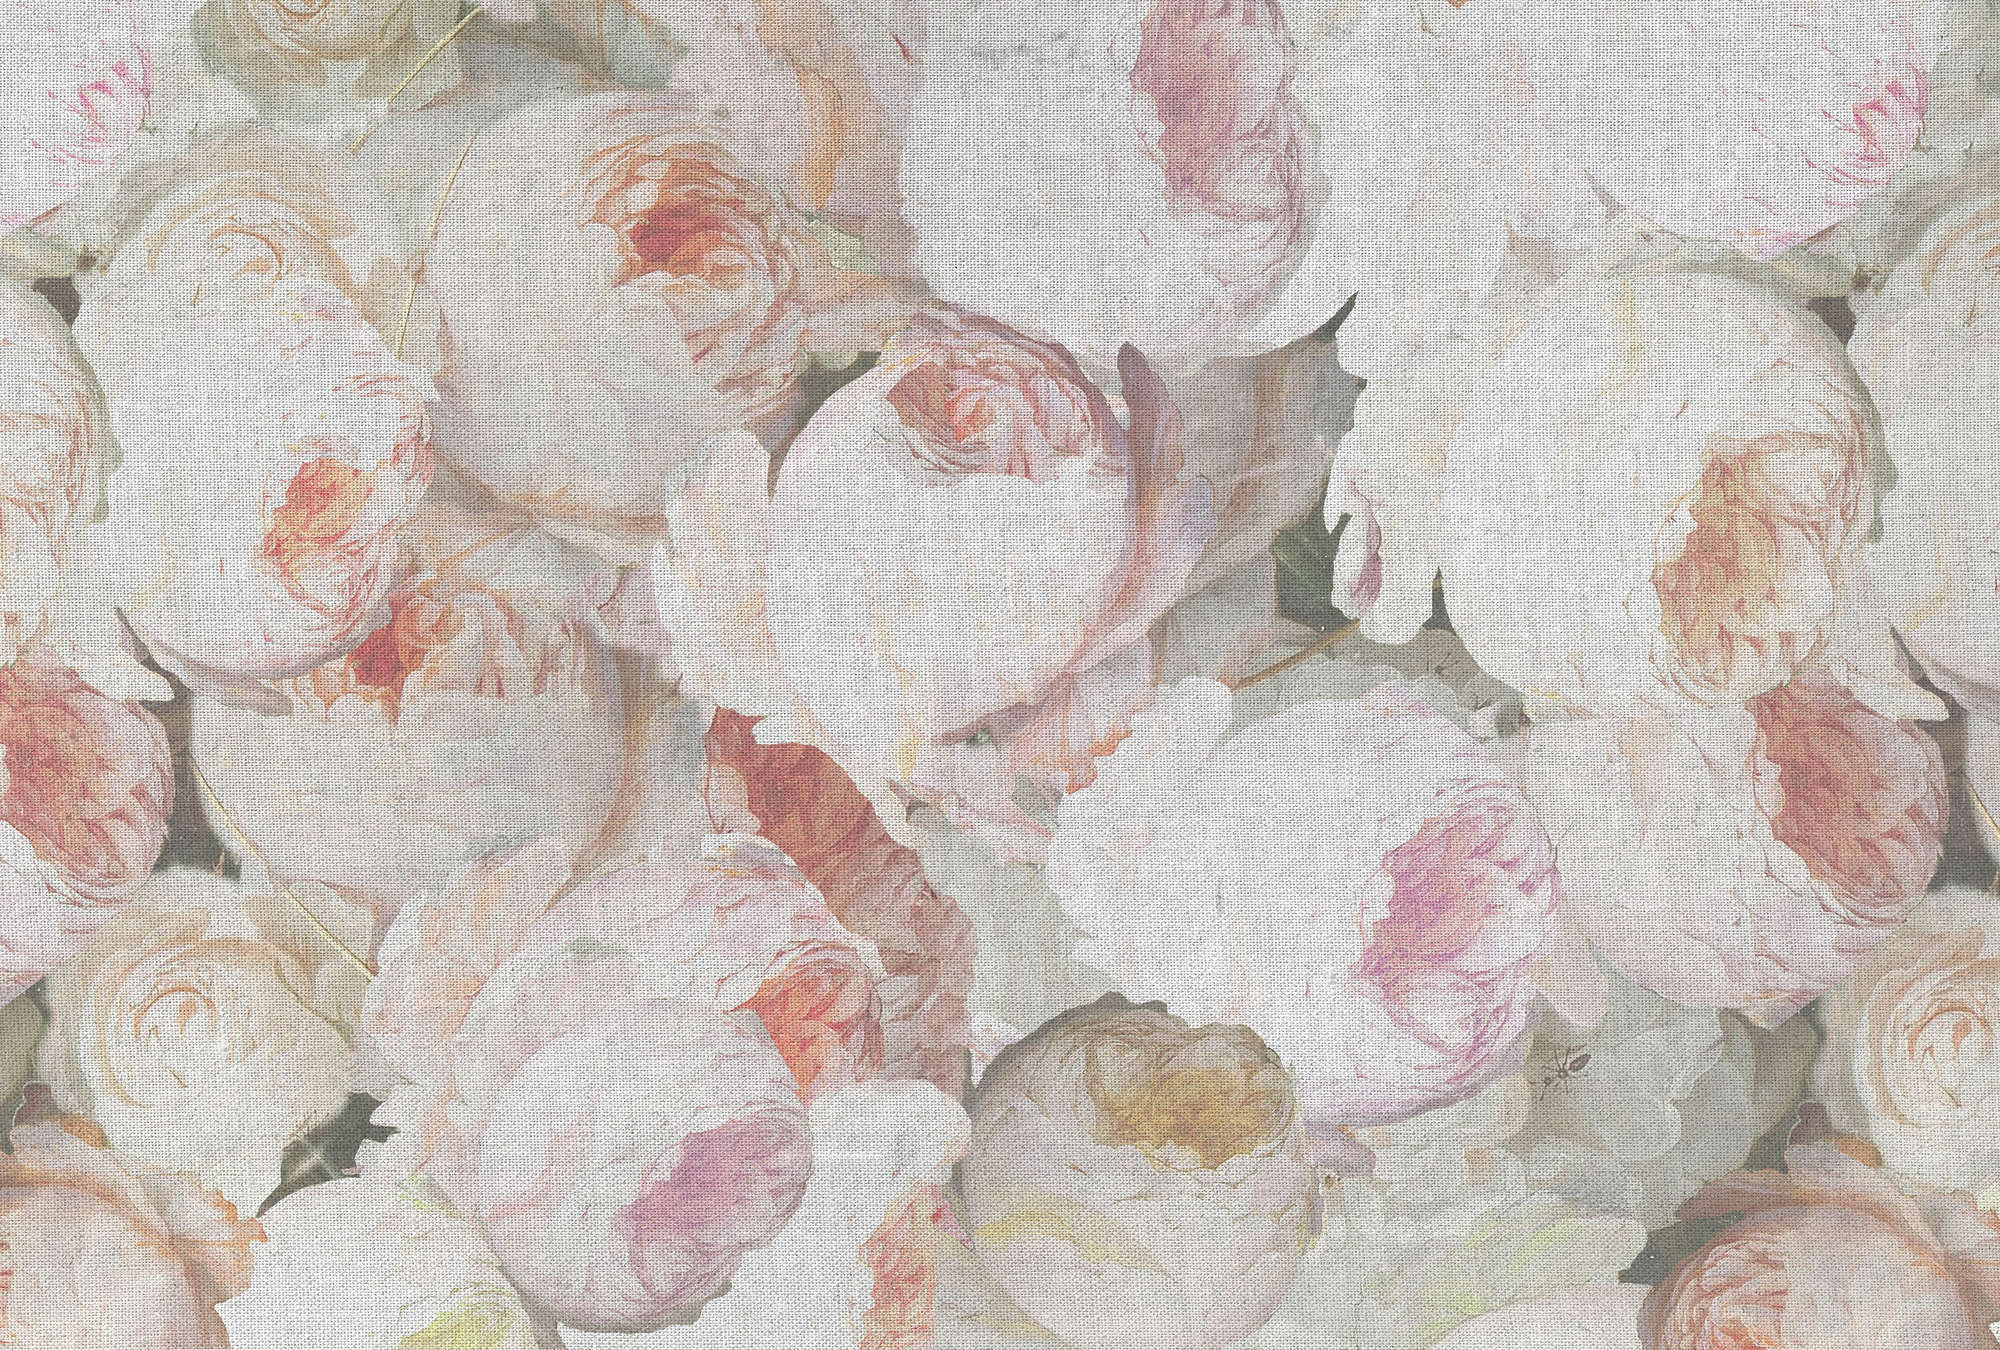             Rosen Fototapete mit Blüten & Leinenoptik – Rosa, Weiß
        